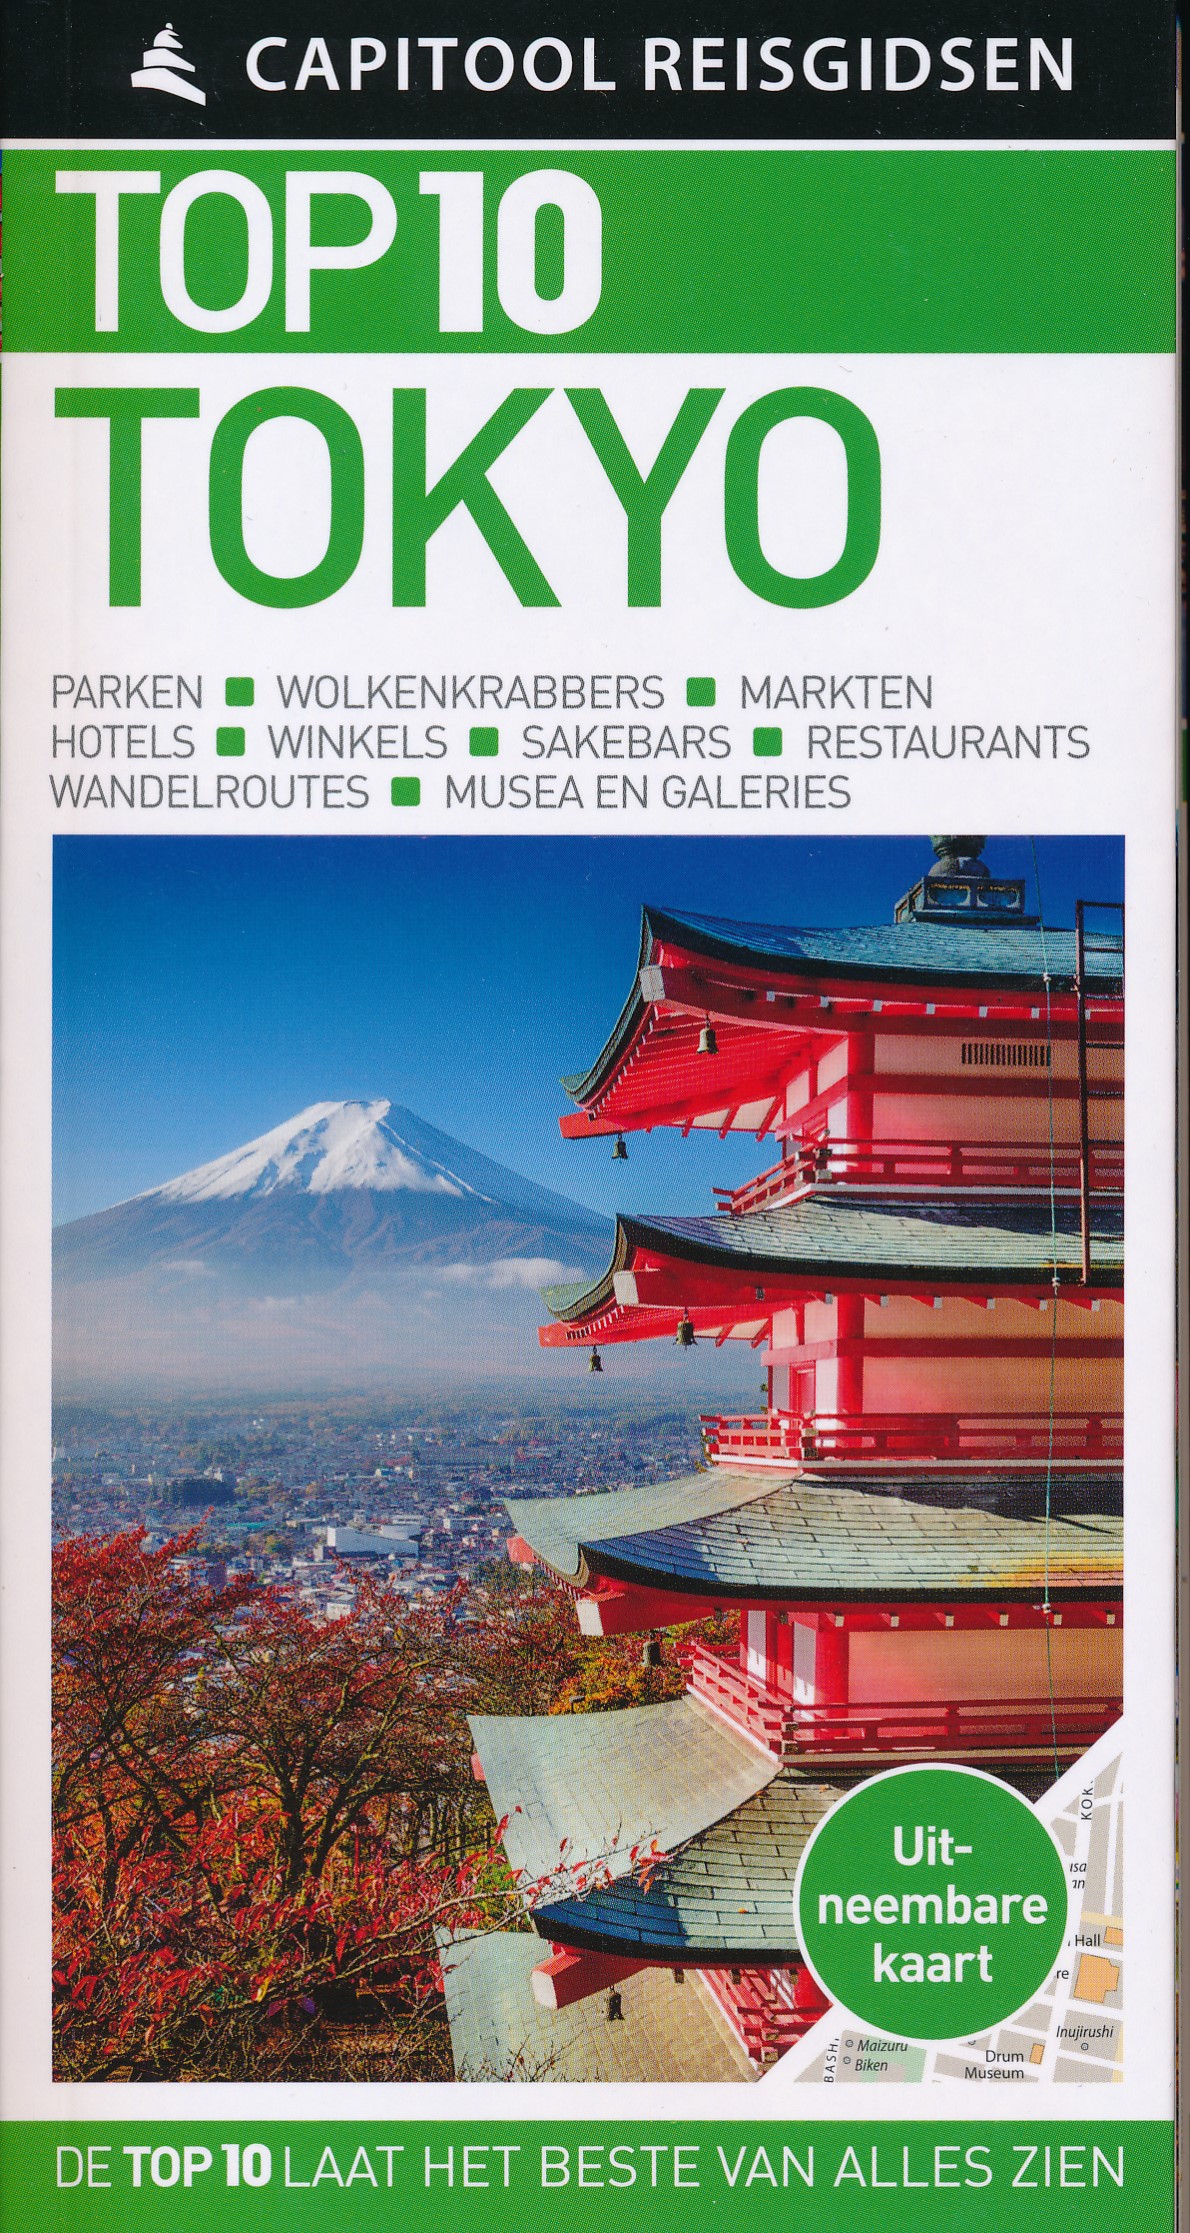 Online bestellen: Reisgids Capitool Top 10 Tokyo | Unieboek